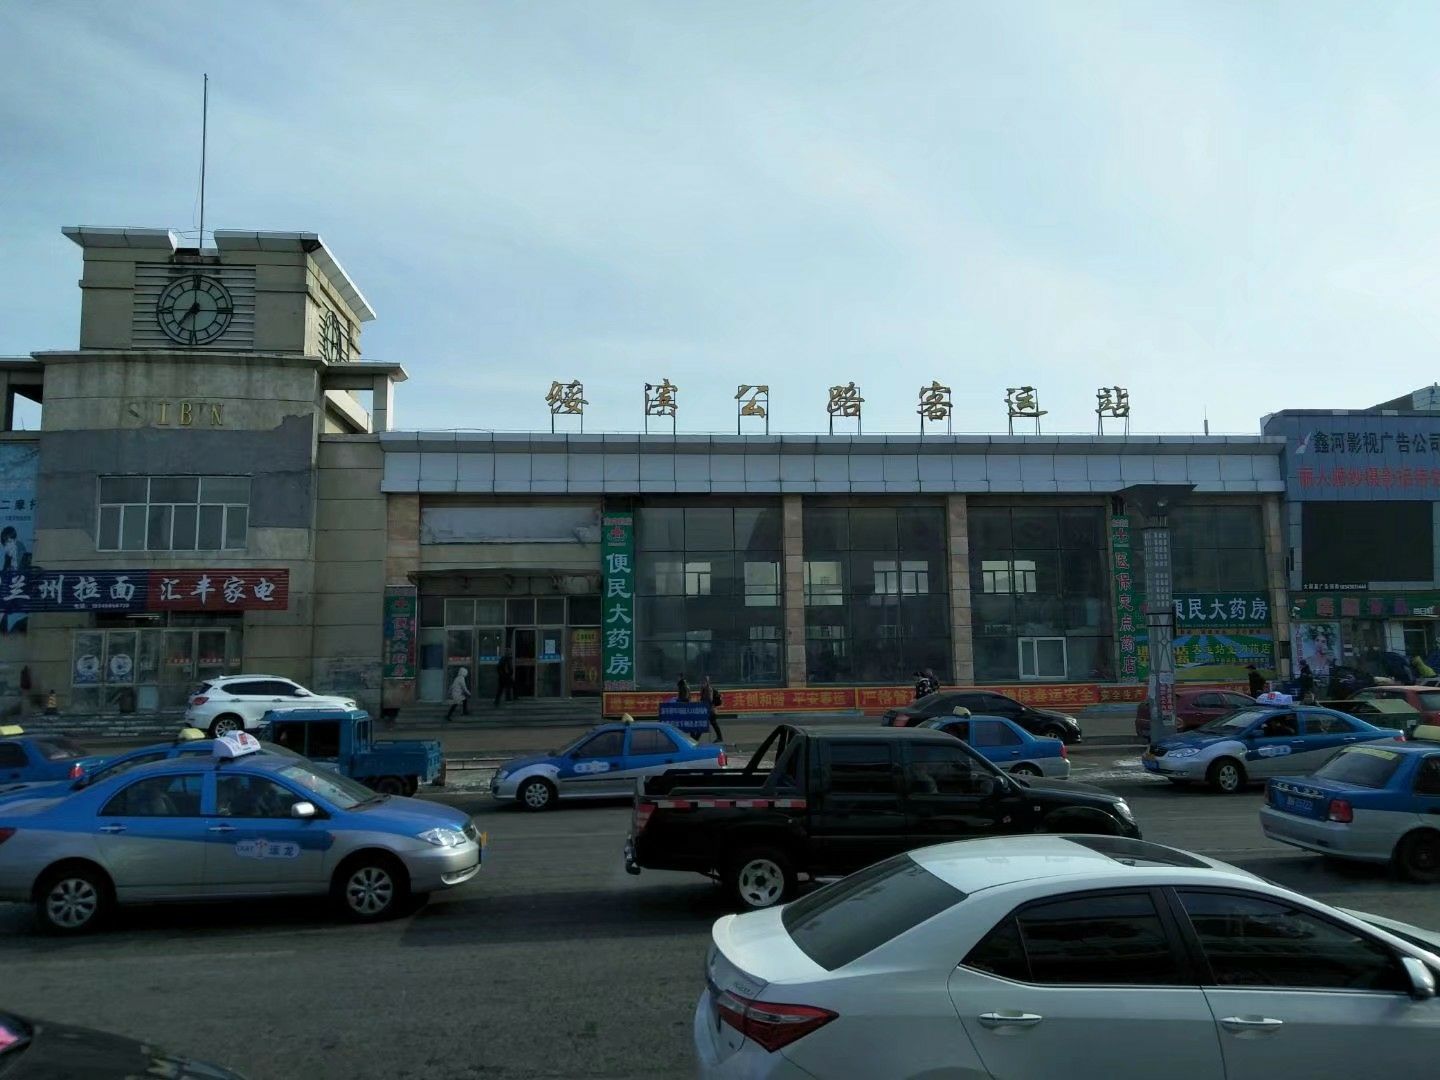 我到过的汽车站（3）绥滨公路客运站，黑龙江省鹤岗市绥滨县，绥滨老客运站，长途汽车站。